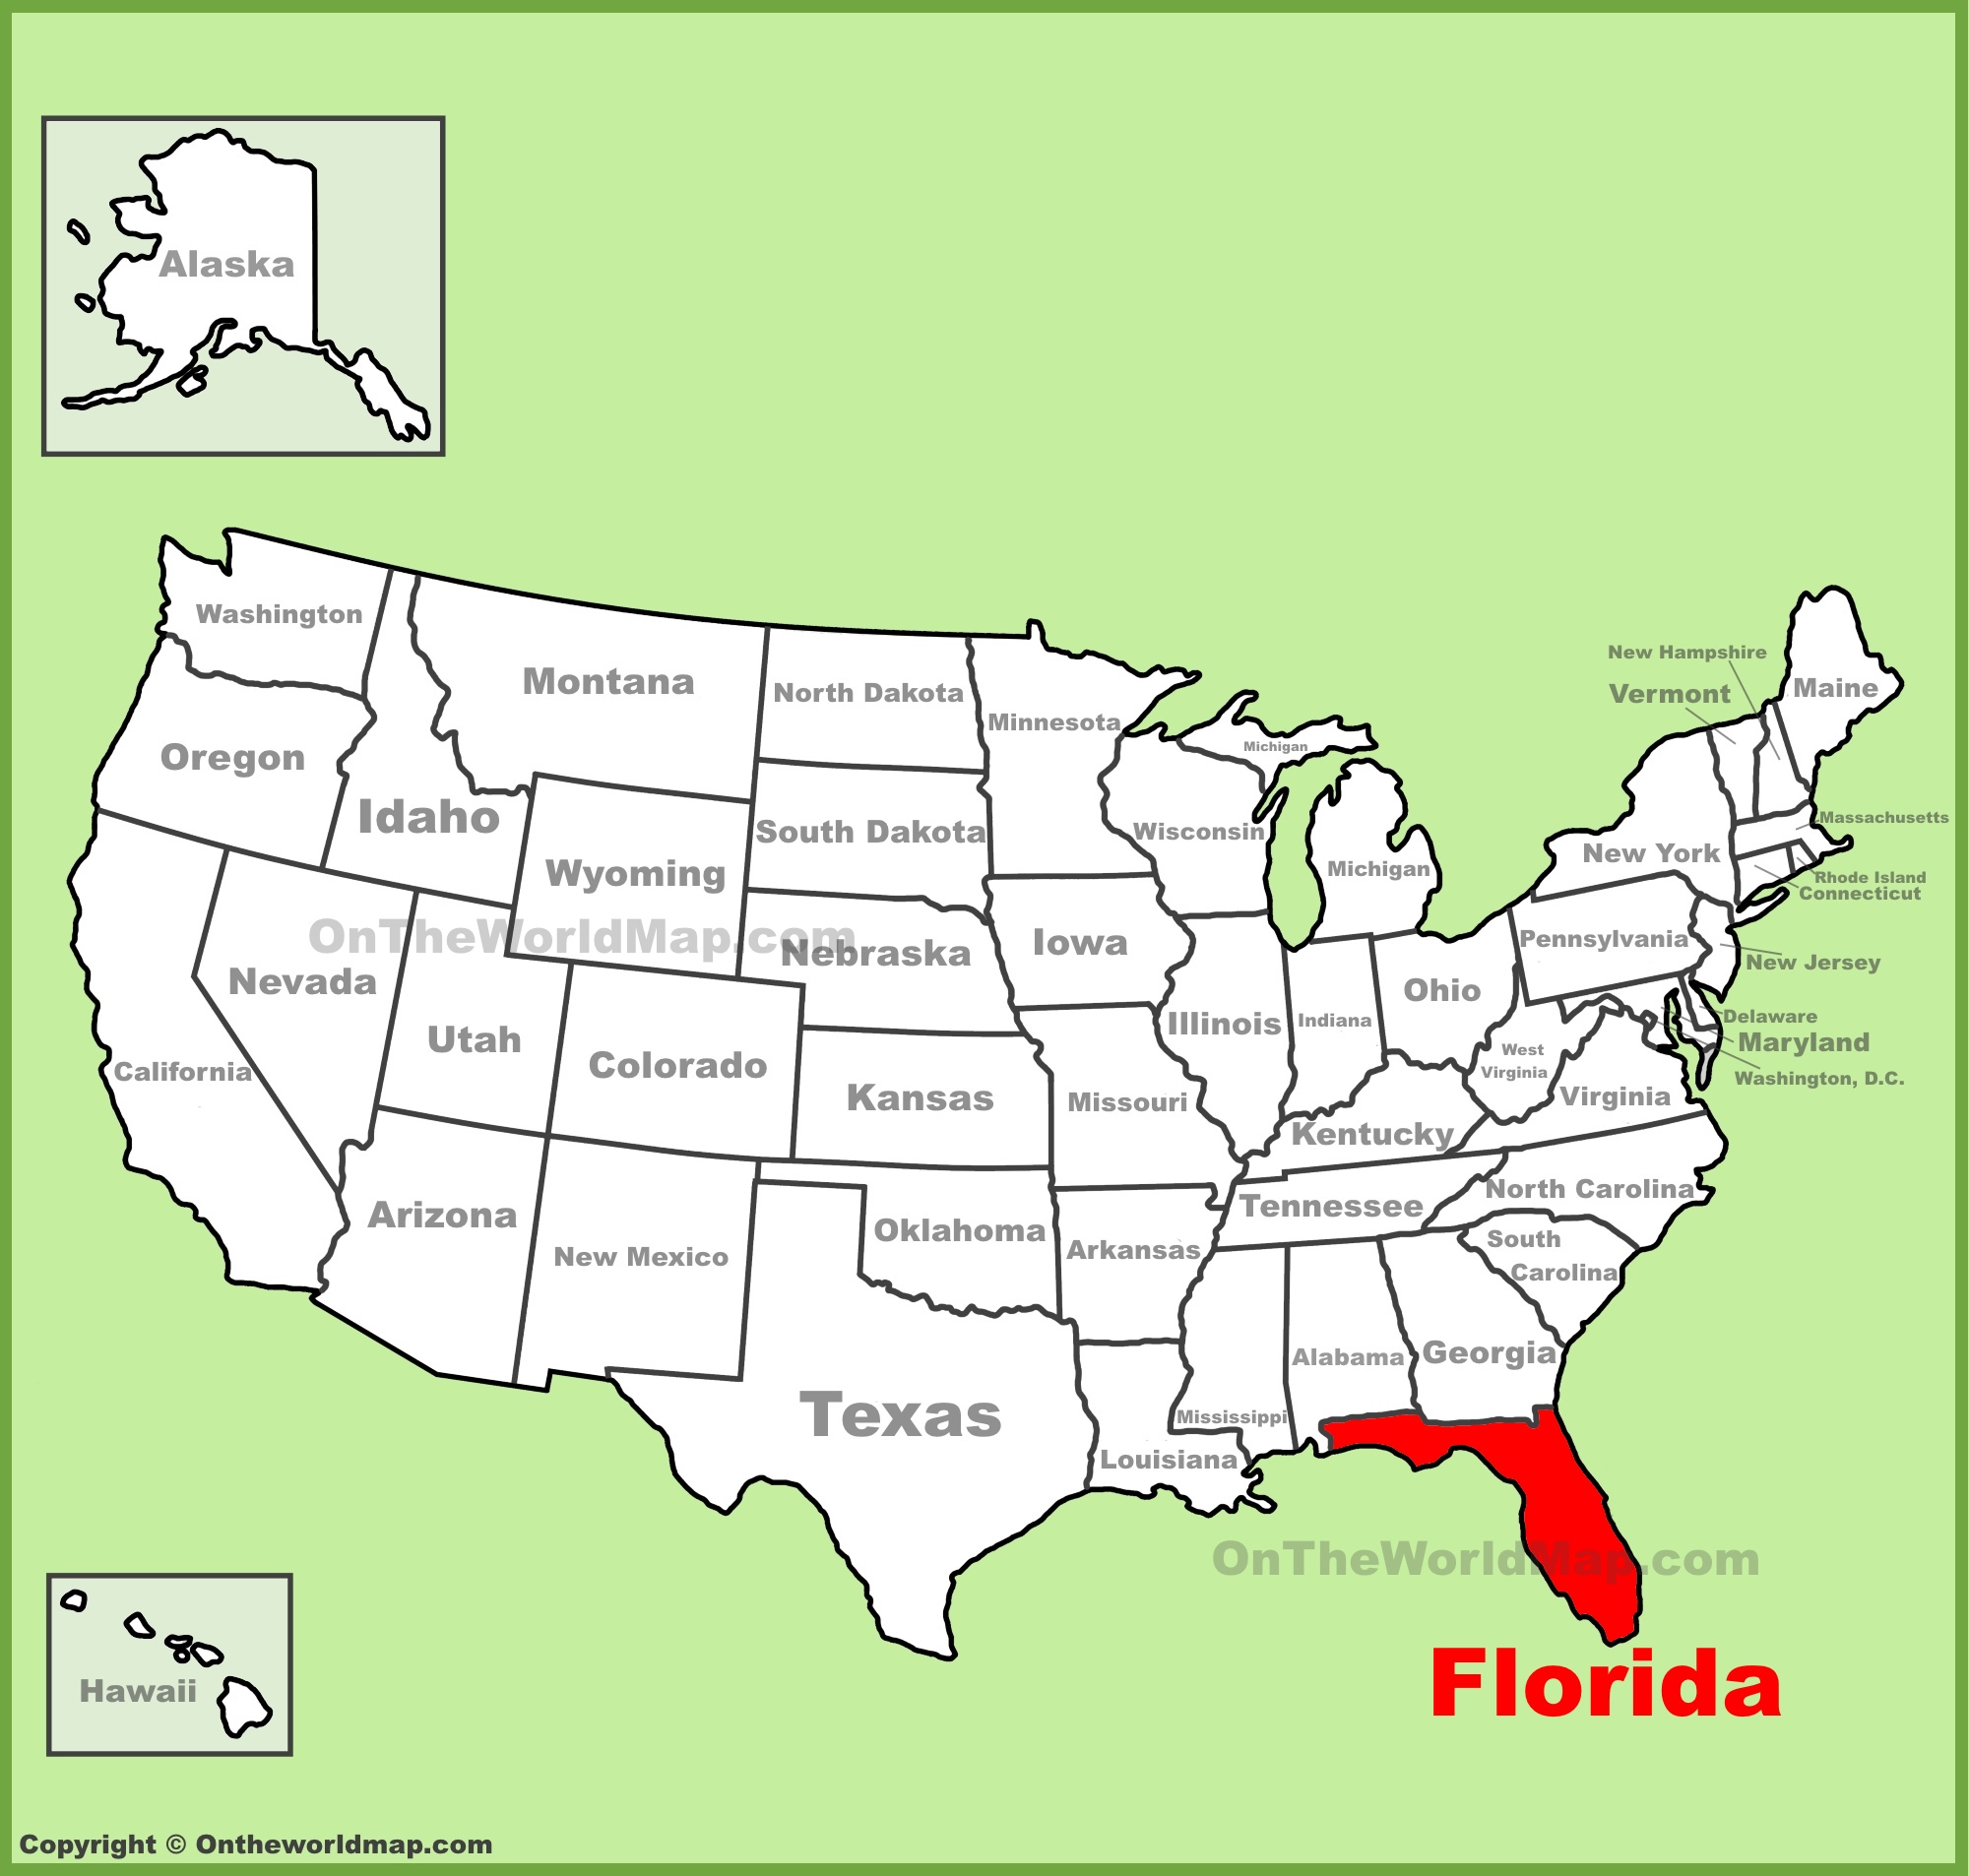 フロリダ州と フロリダ州の大学を知ろう アメリカ大学ランキング